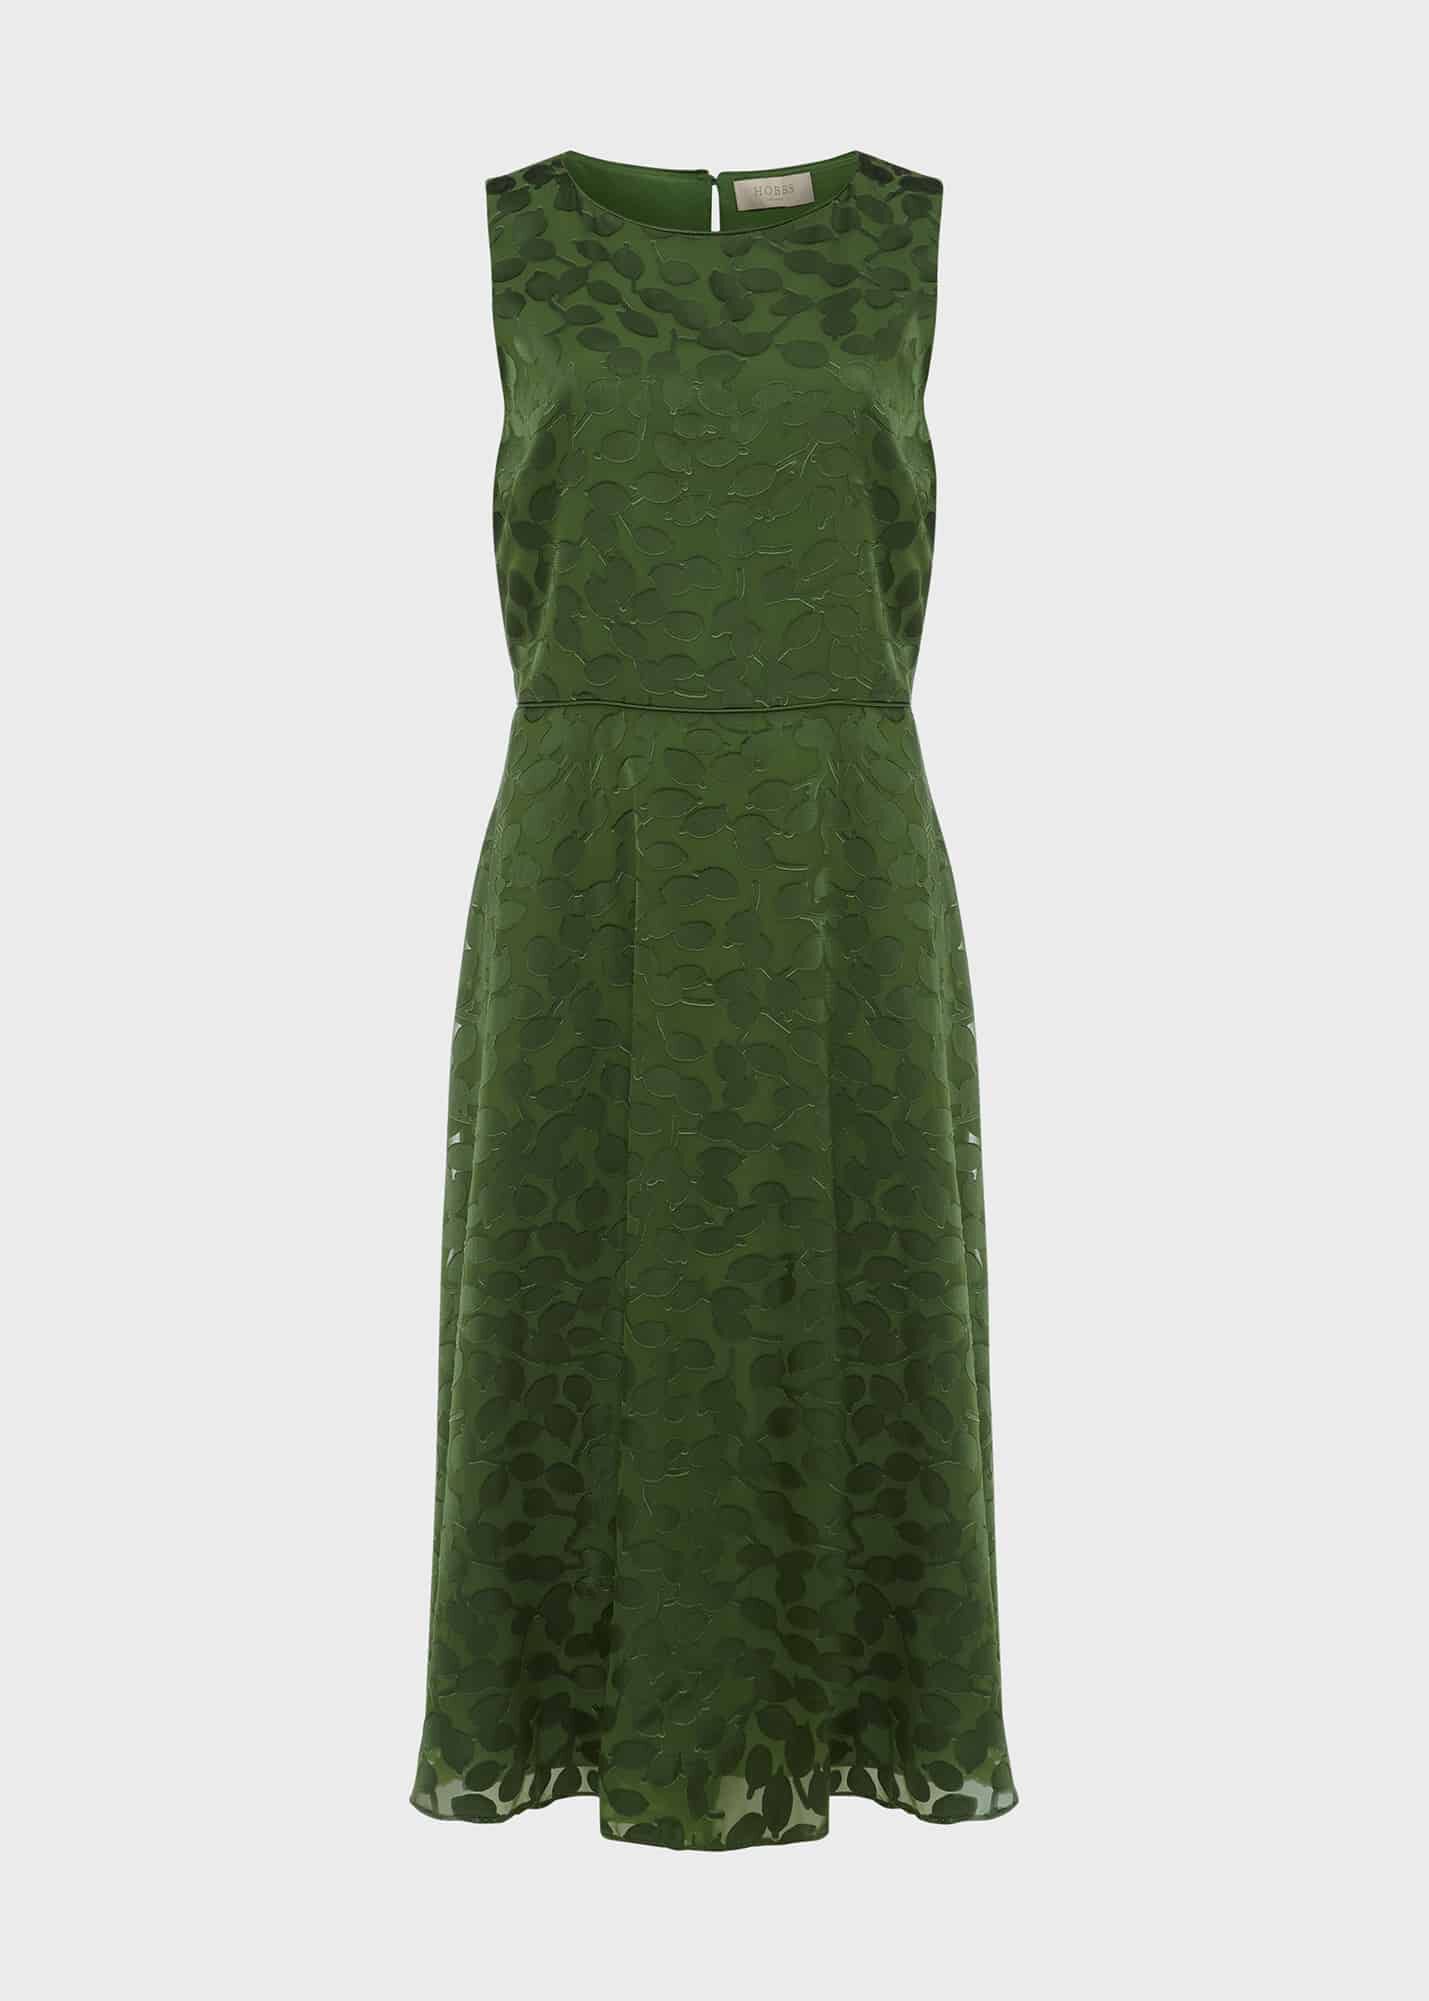 hobbs green floral dress